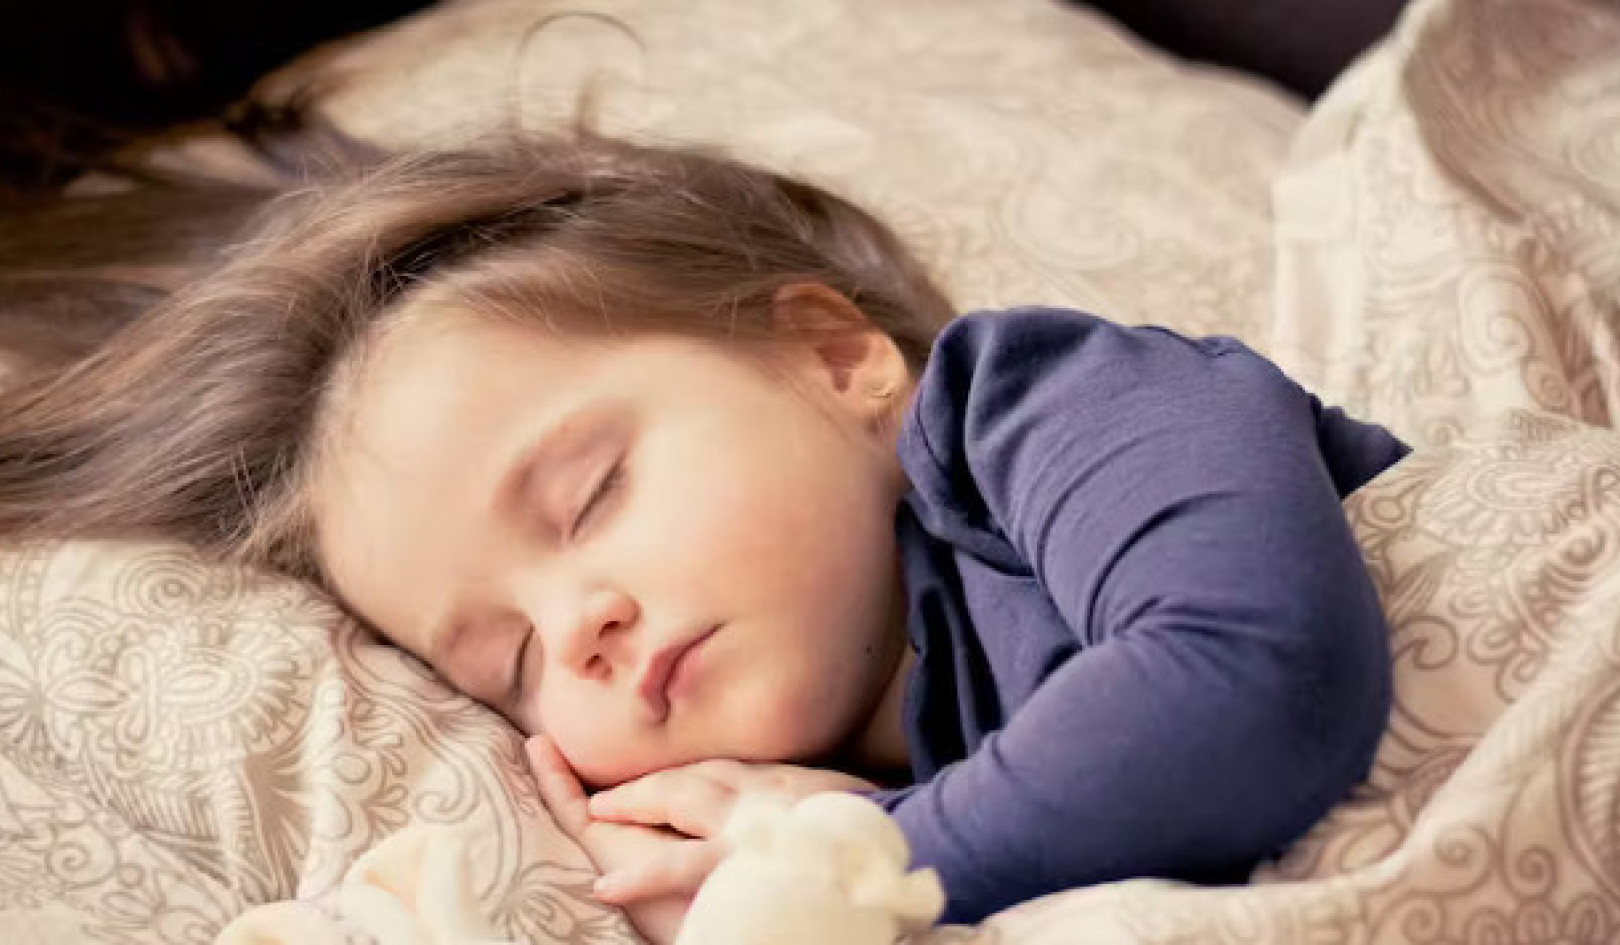 הורים רבים משתמשים בגומי מלטונין כדי לעזור לילדים לישון